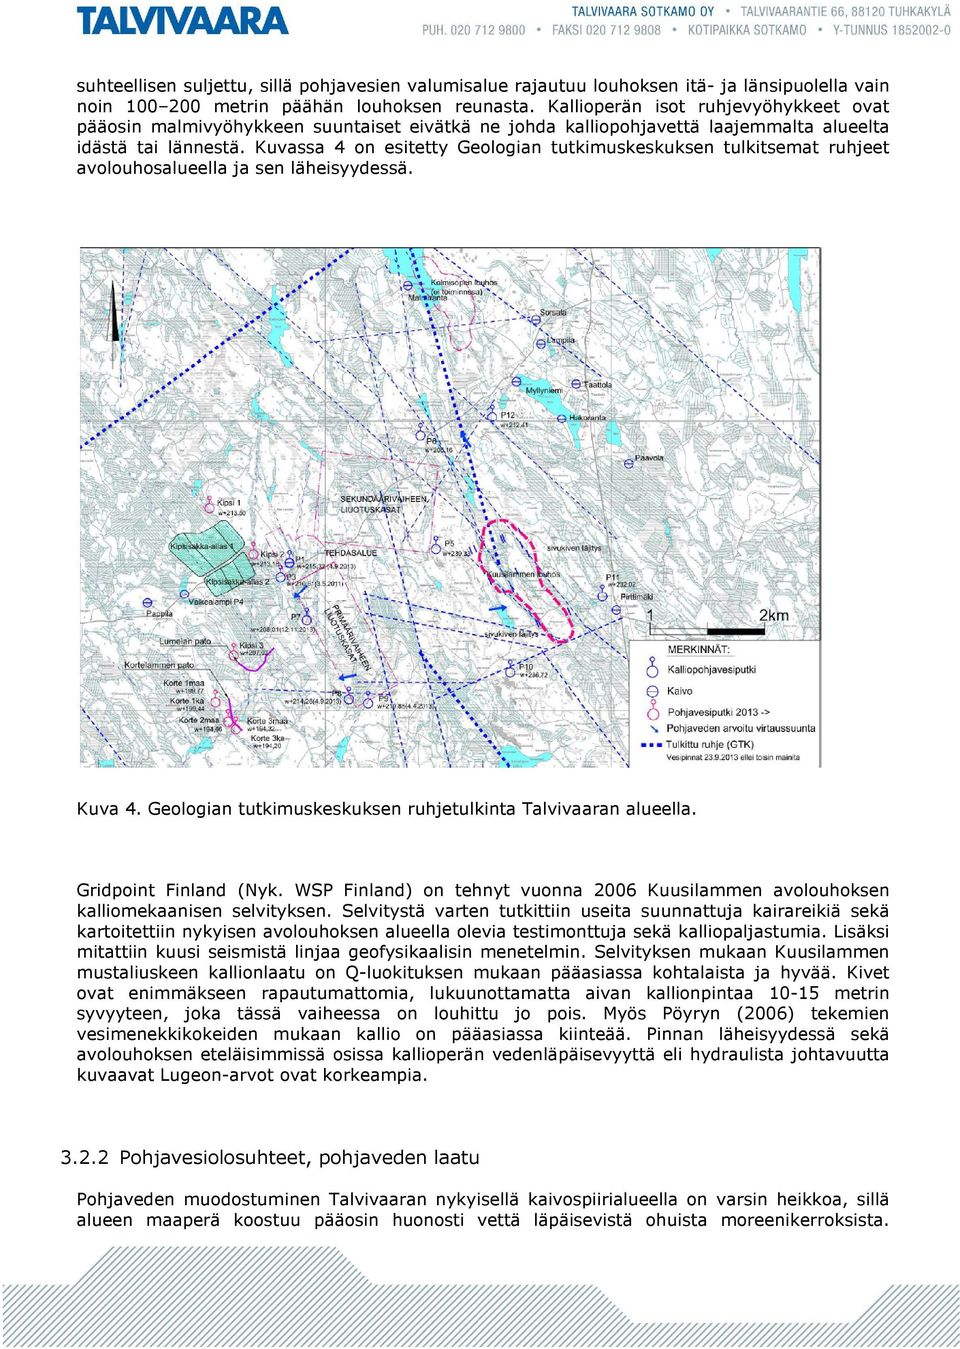 Kuvassa 4 on esitetty Geologian tutkimuskeskuksen tulkitsemat ruhjeet avolouhosalueella ja sen läheisyydessä. Kuva 4. Geologian tutkimuskeskuksen ruhjetulkinta Talvivaaran alueella.